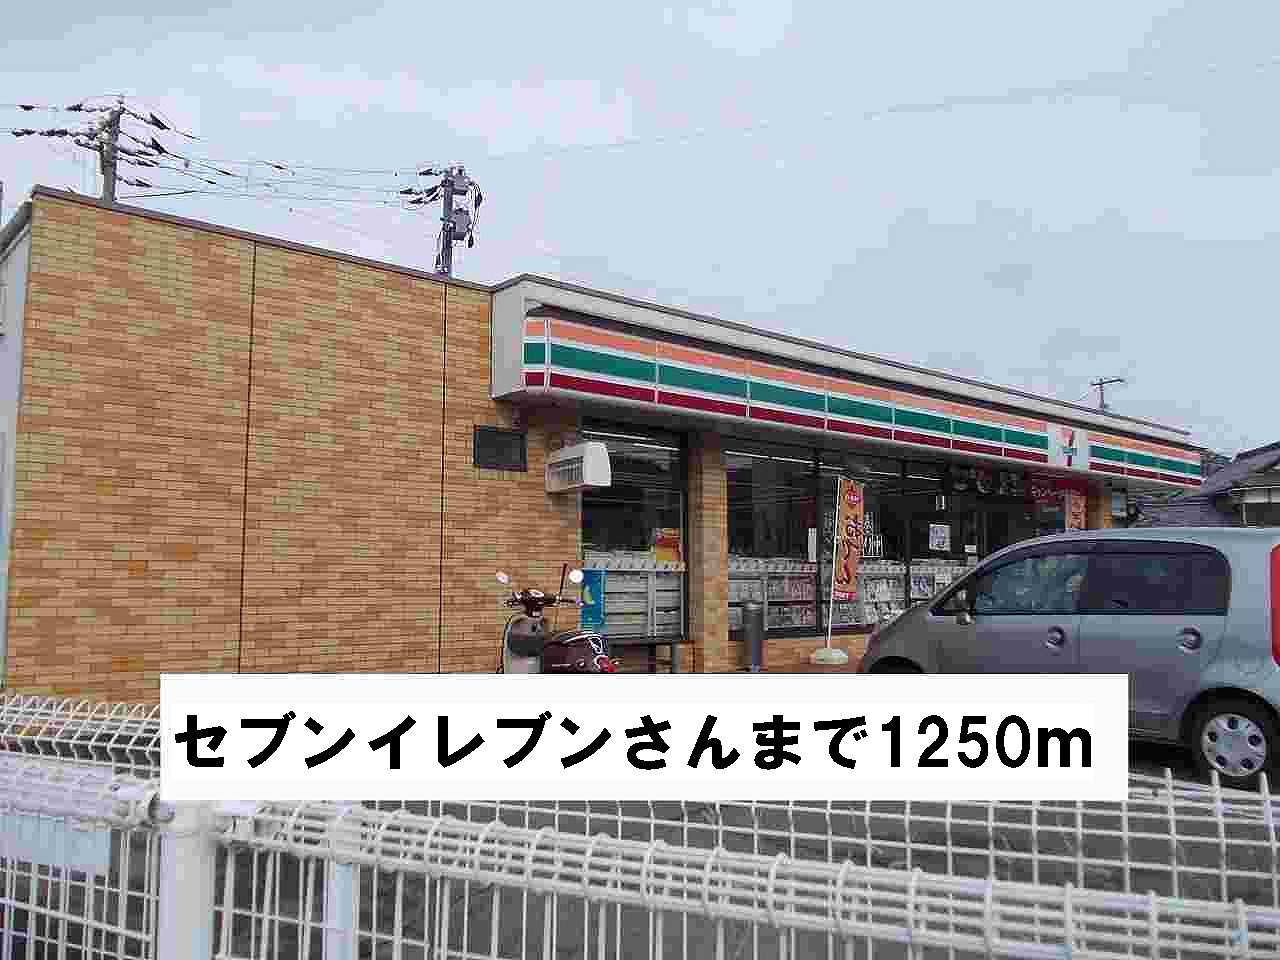 Convenience store. 1250m to Seven-Eleven's (convenience store)